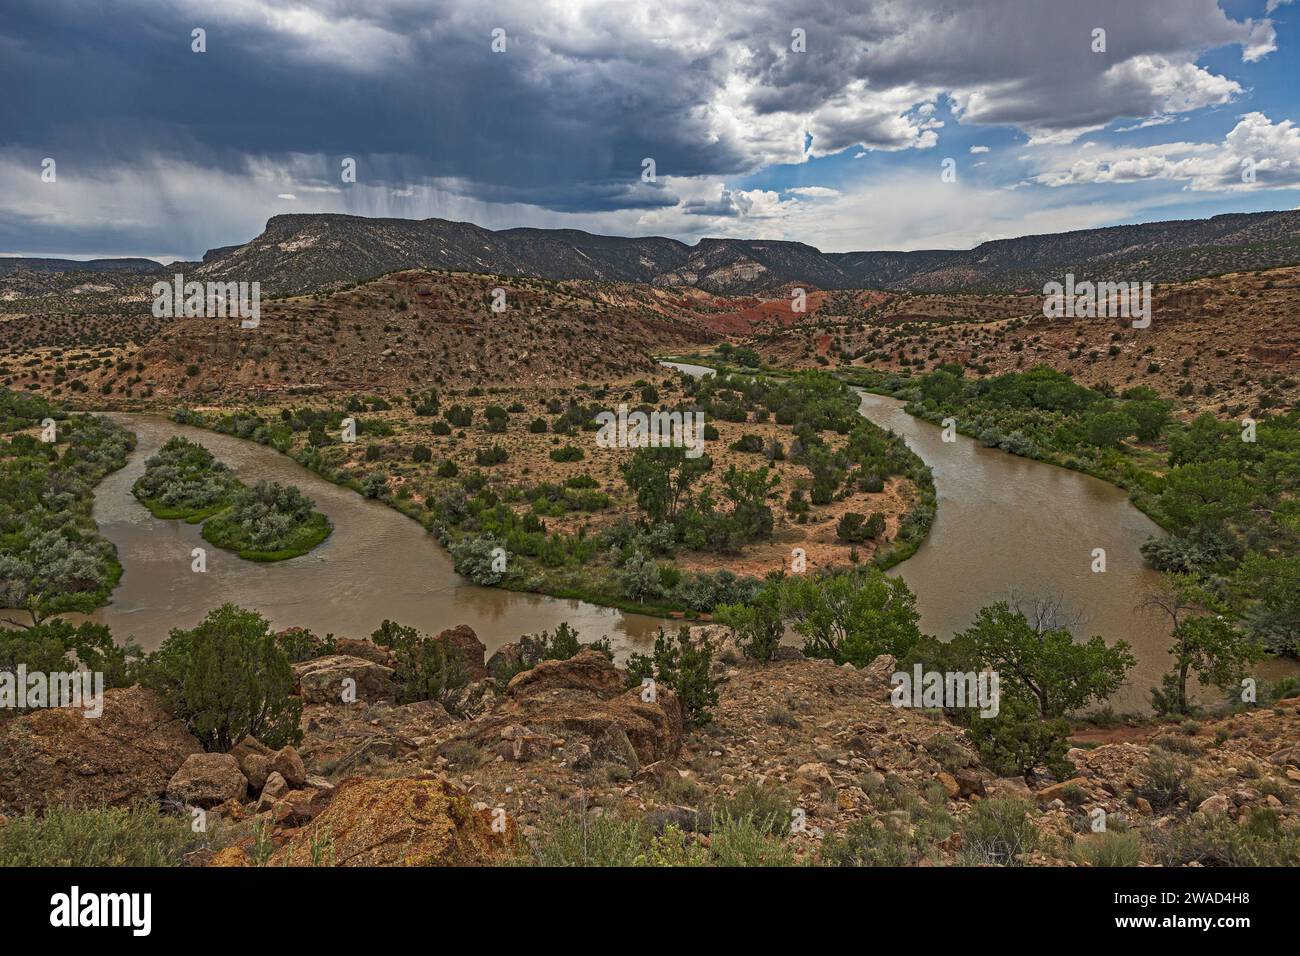 USA, New Mexico, Abiquiu, tempesta nuvole su Rio Chama Foto Stock